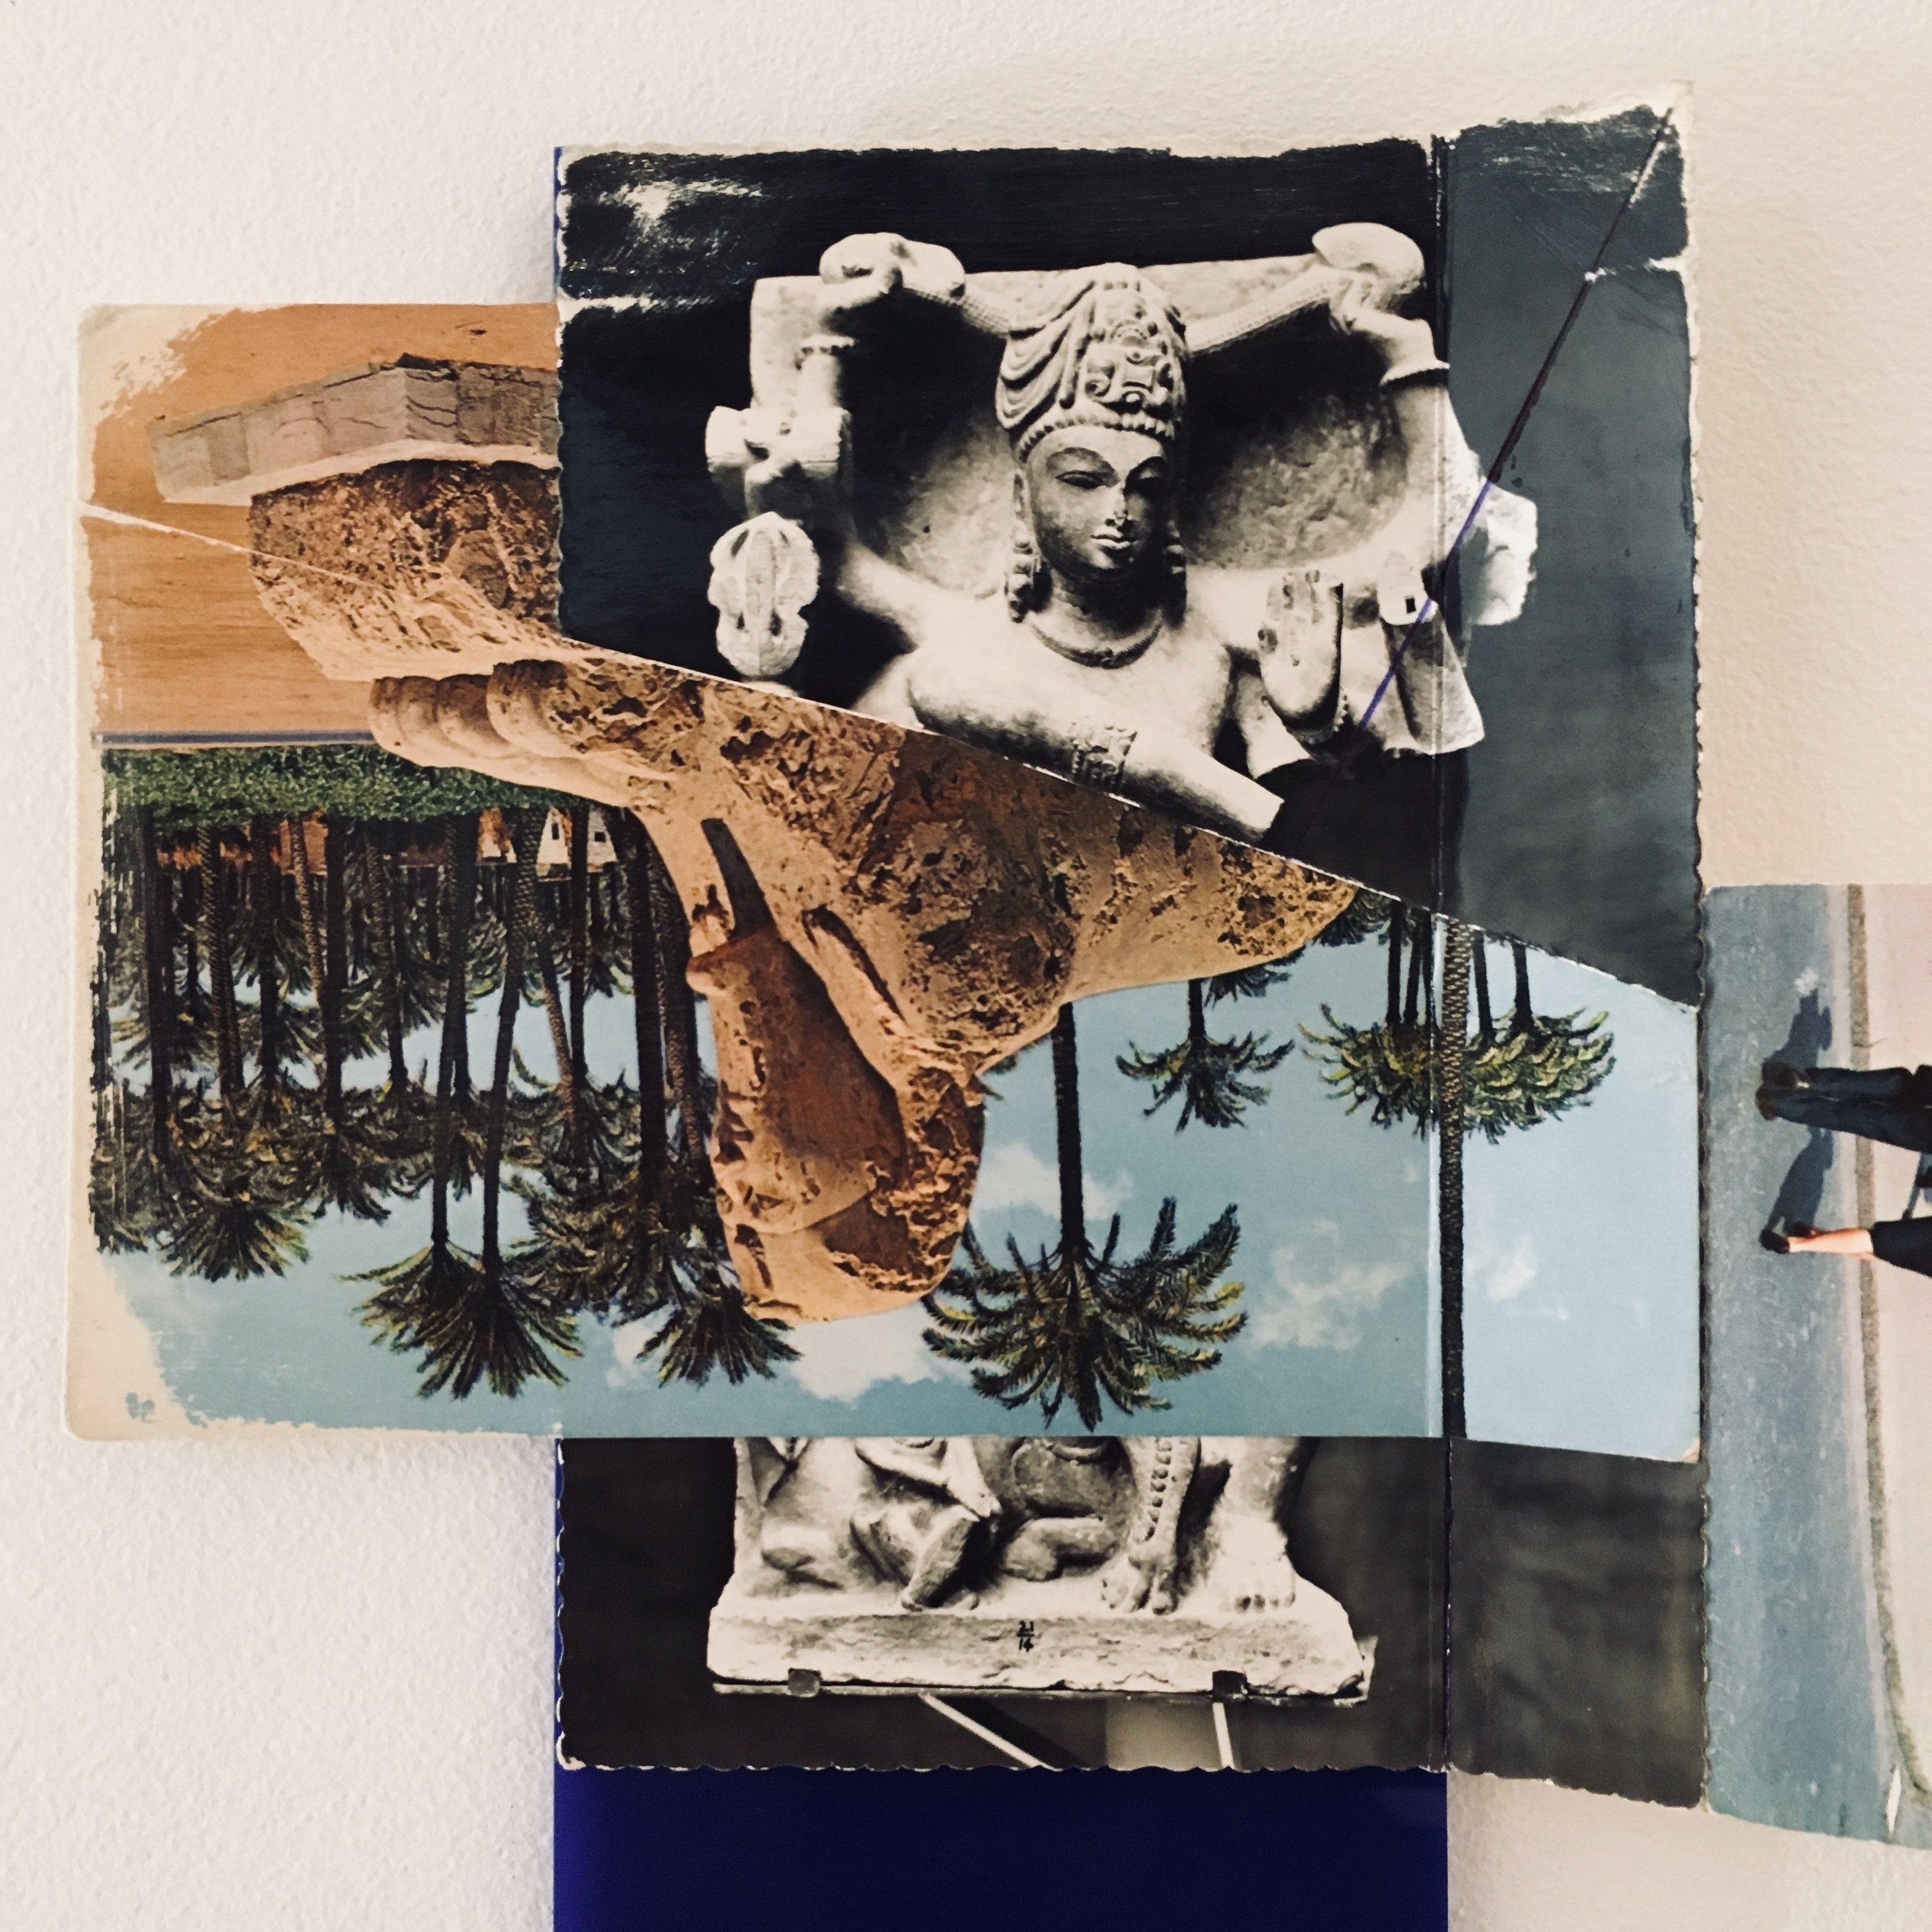 Gê Orthof, Máquinas mínimas, Salo’ çiva verona sphinx, Acrílico, postais, balsa e miniatura plástica, desenho-assemblage, 35 x 25 x 9 cm, 2018 detalhe